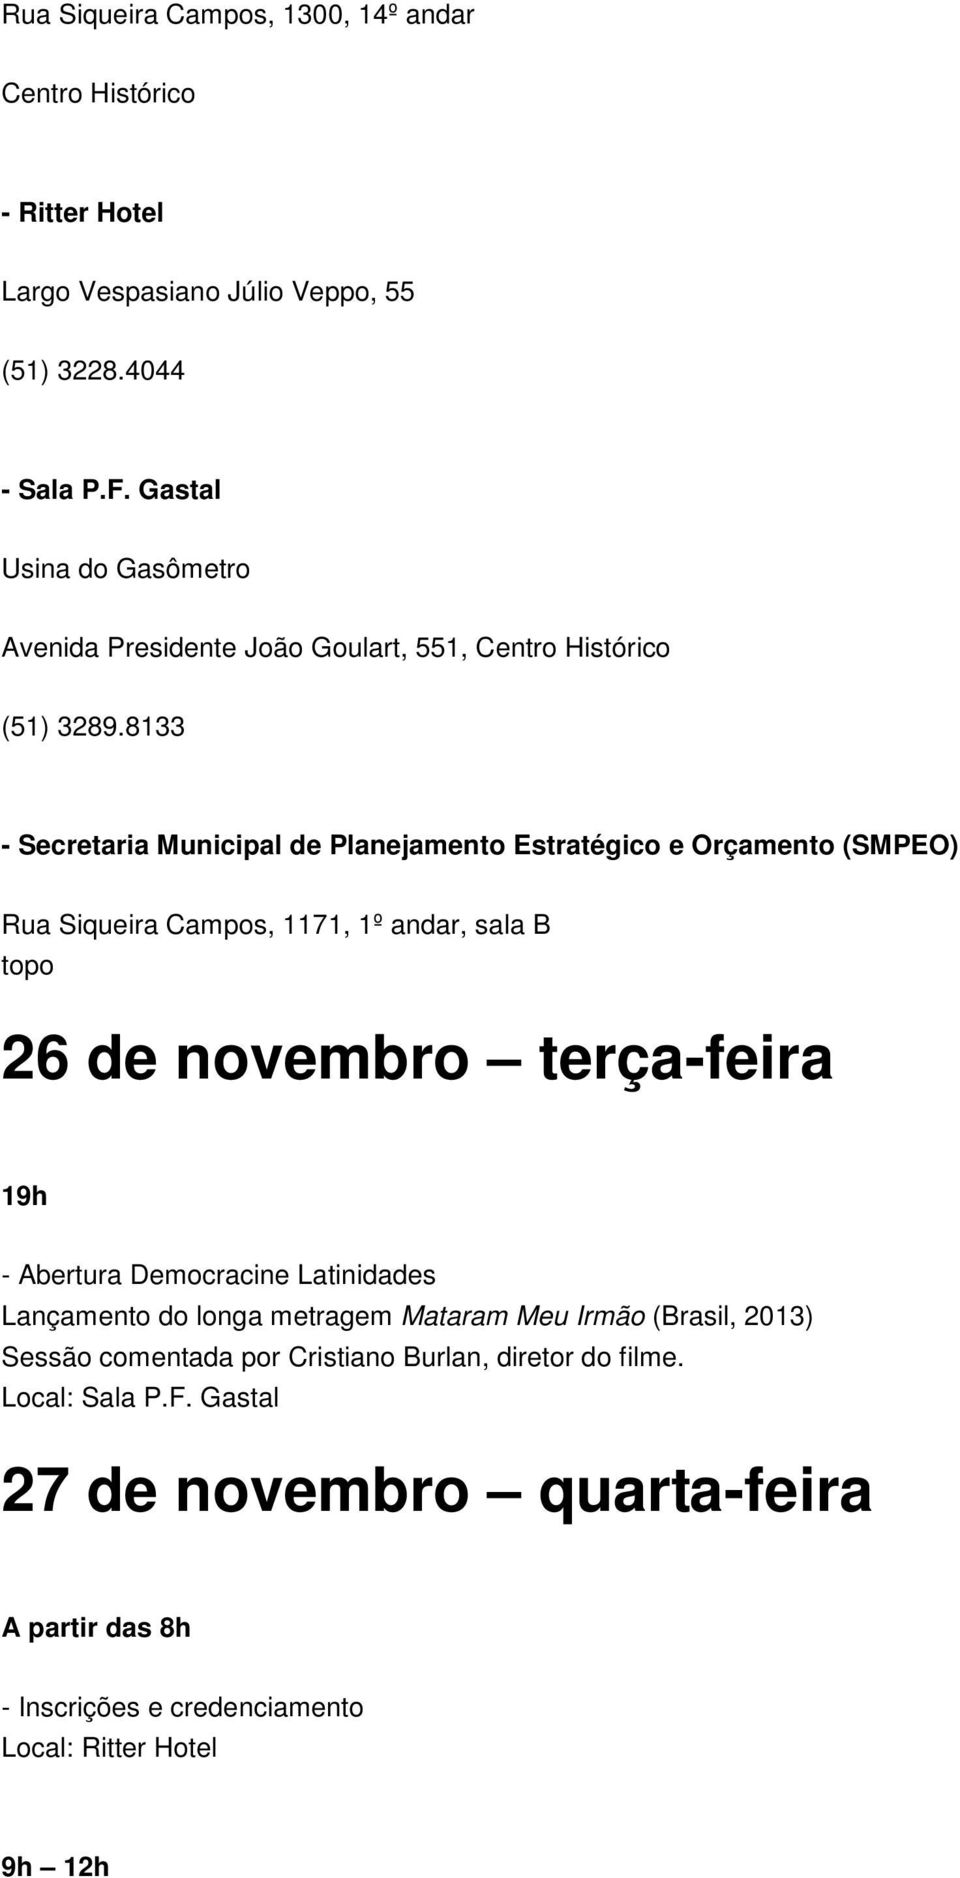 8133 - Secretaria Municipal de Planejamento Estratégico e Orçamento (SMPEO) Rua Siqueira Campos, 1171, 1º andar, sala B topo 26 de novembro terça-feira 19h -